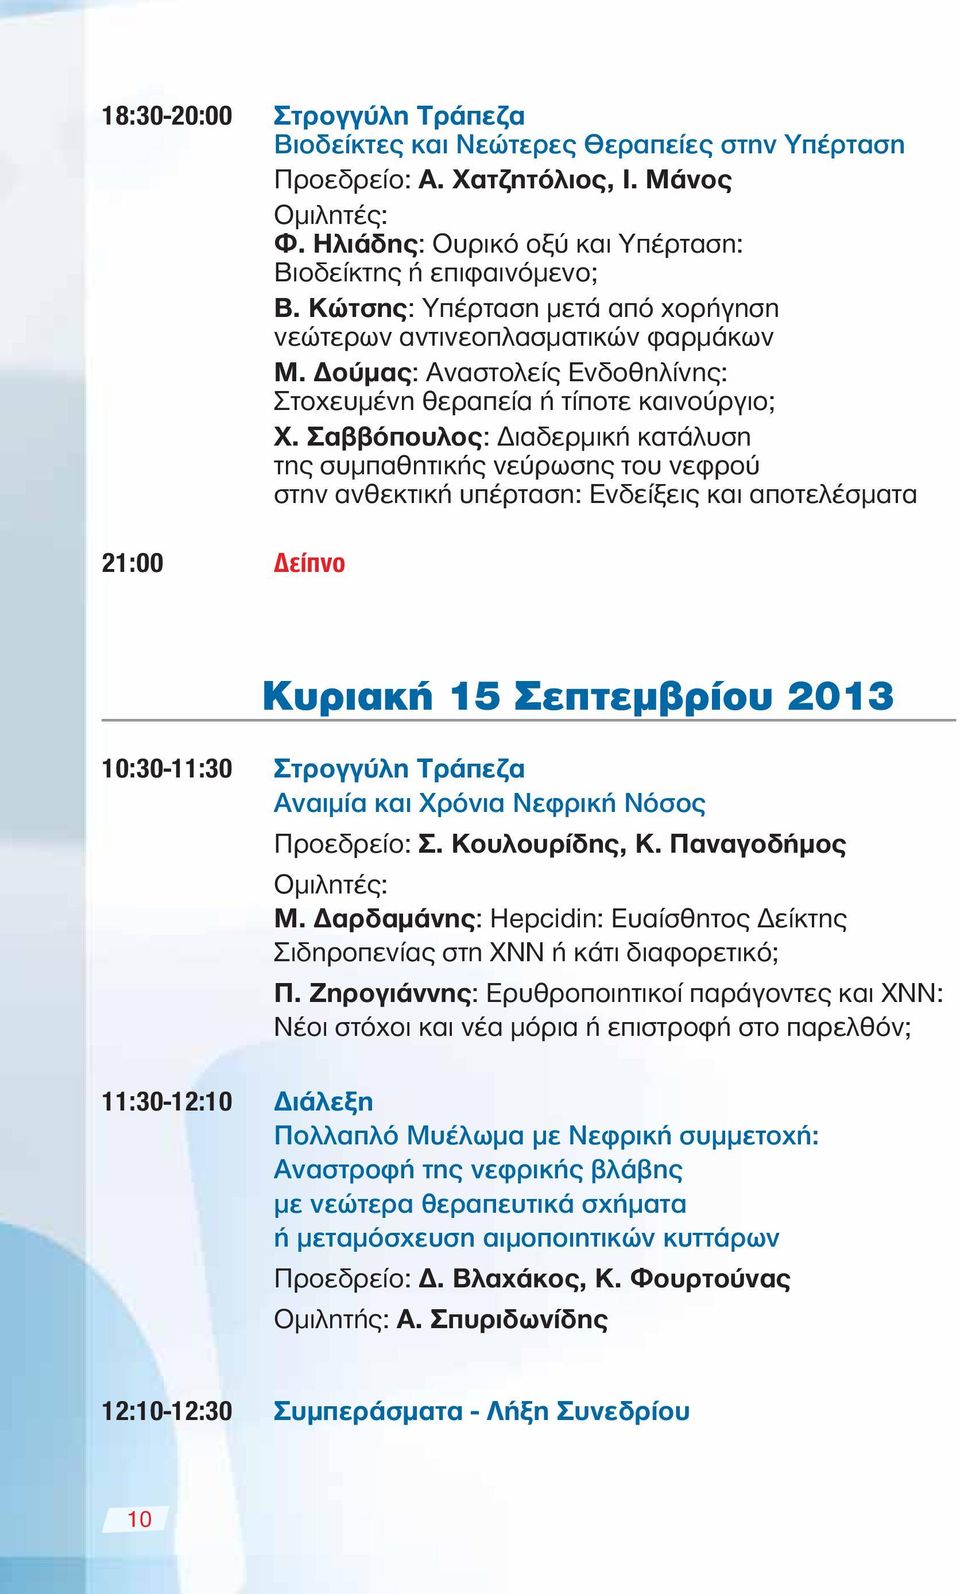 Σαββόπουλος: Διαδερμική κατάλυση της συμπαθητικής νεύρωσης του νεφρού στην ανθεκτική υπέρταση: Ενδείξεις και αποτελέσματα 21:00 Δείπνο Κυριακή 15 Σεπτεμβρίου 2013 10:30-11:30 Στρογγύλη Τράπεζα